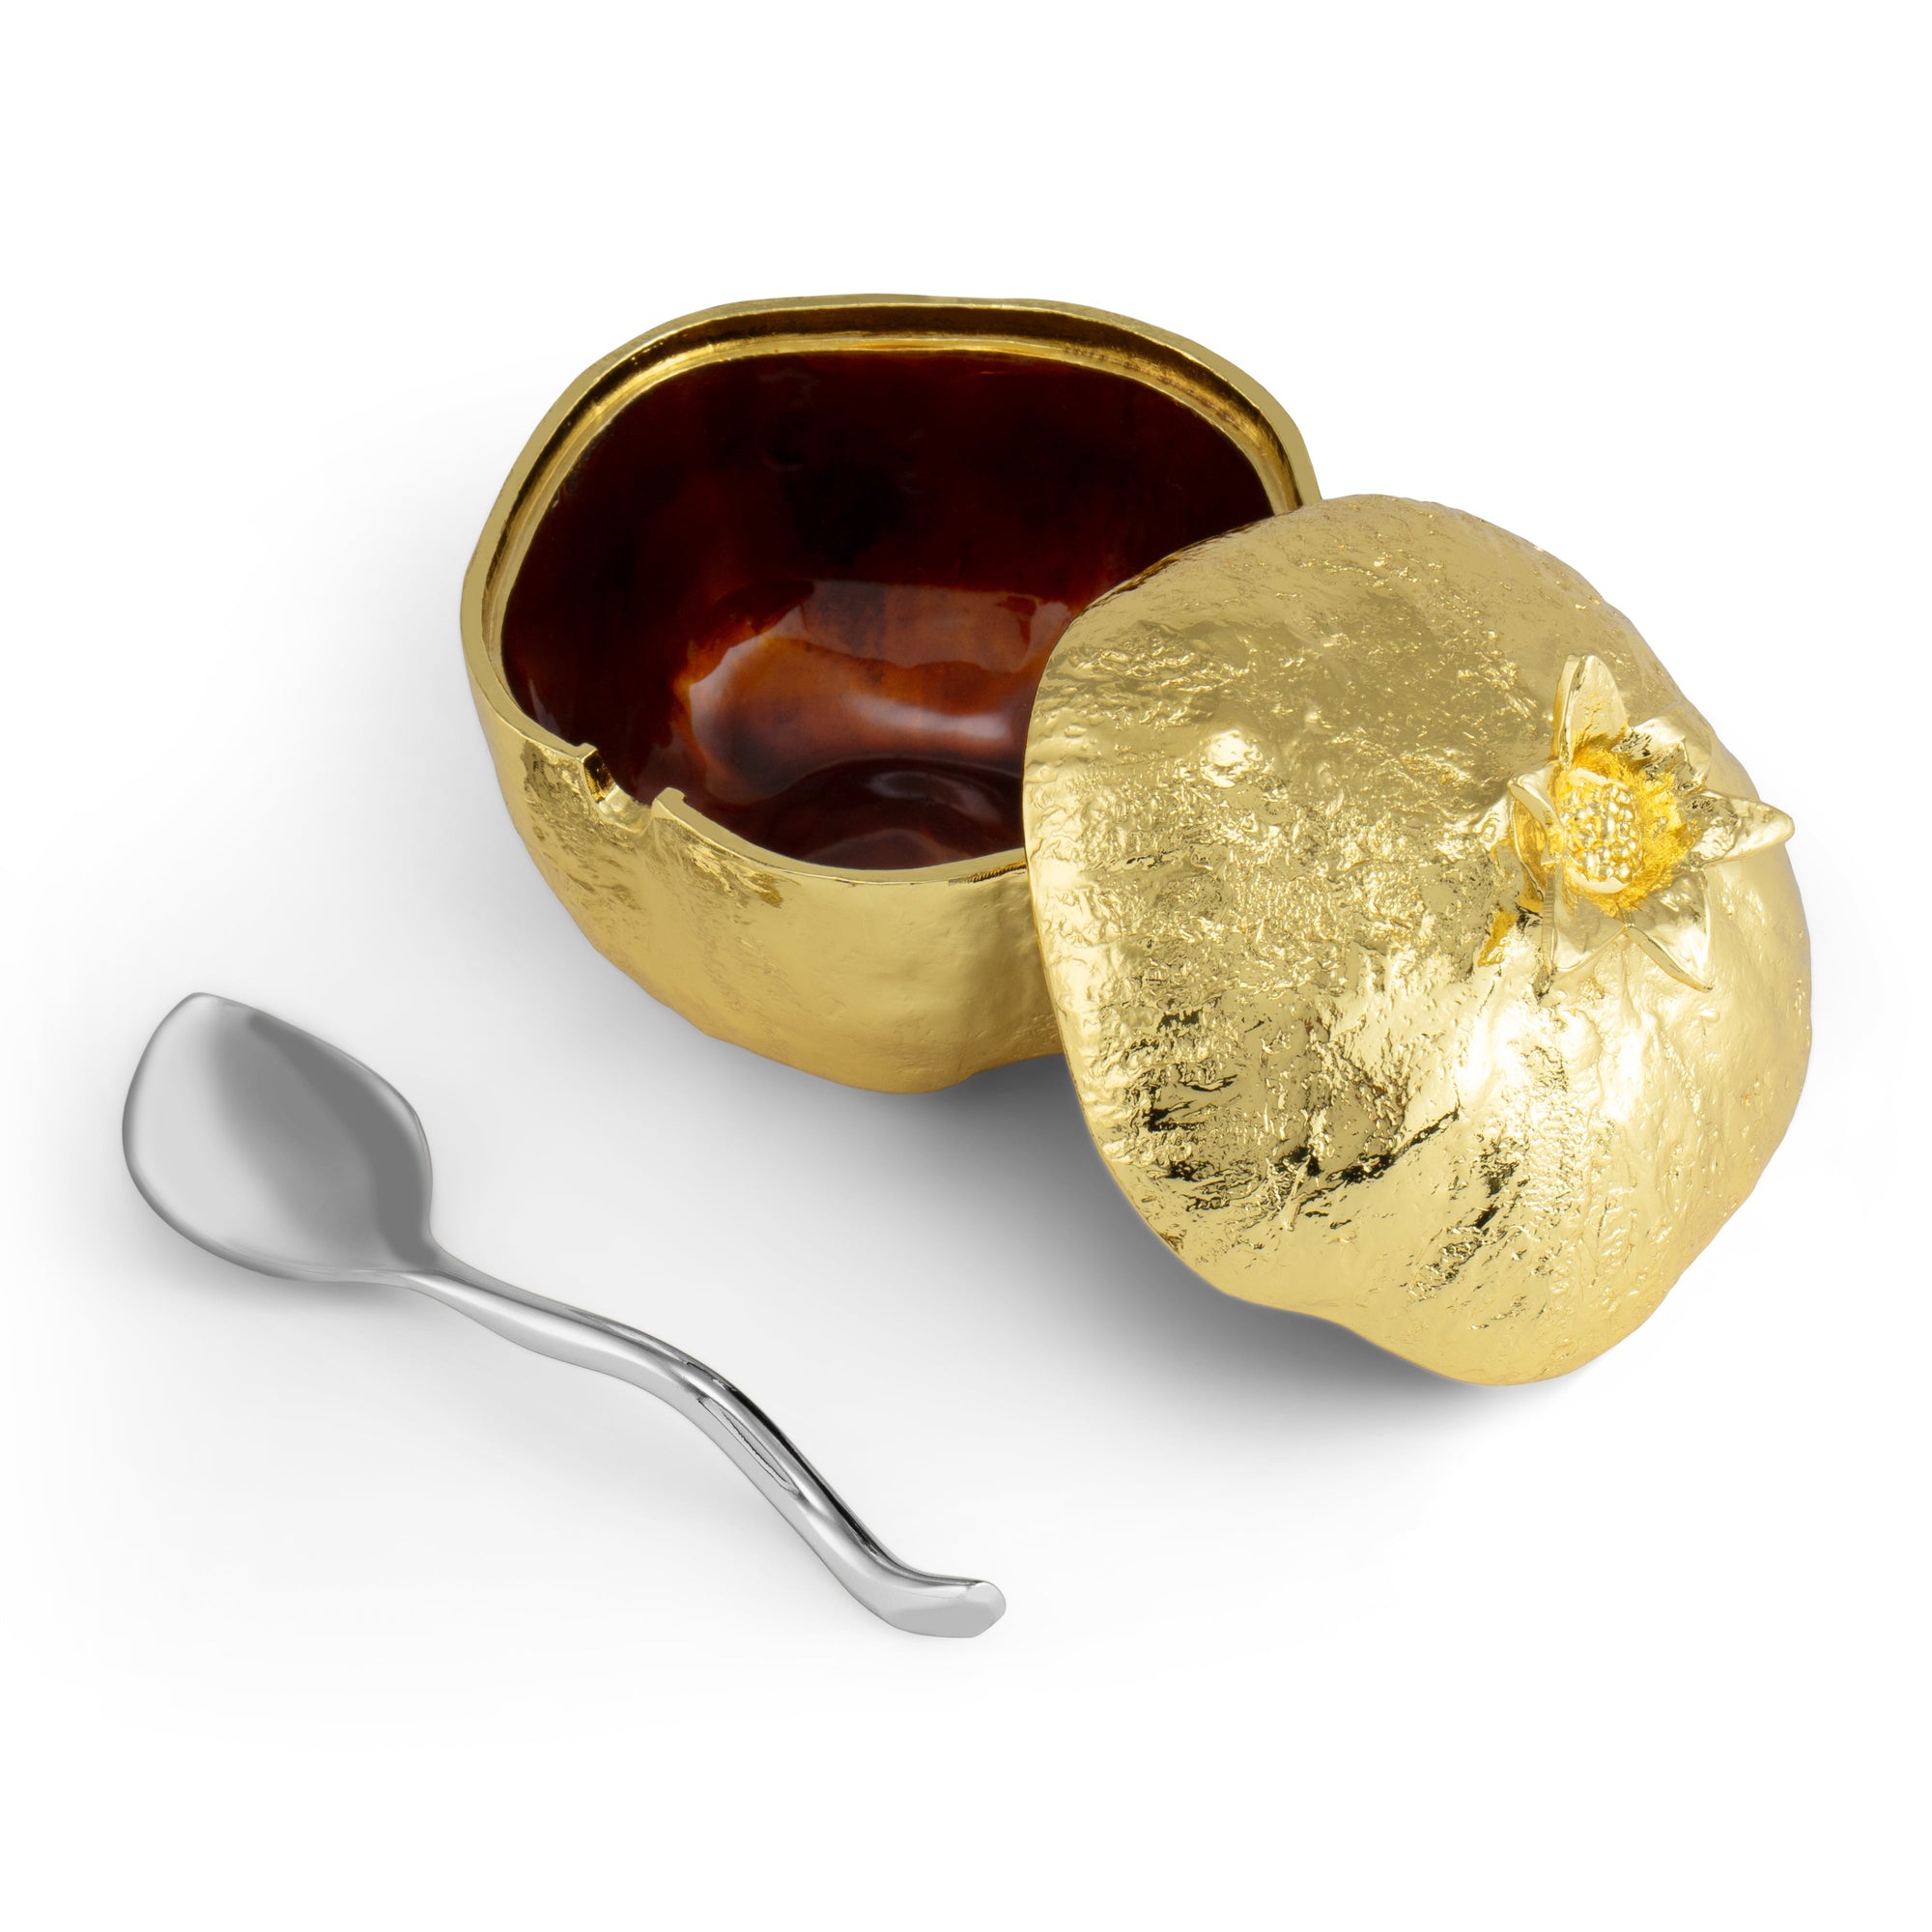 Michael Aram Pomegranate Mini Pot w/ Spoon